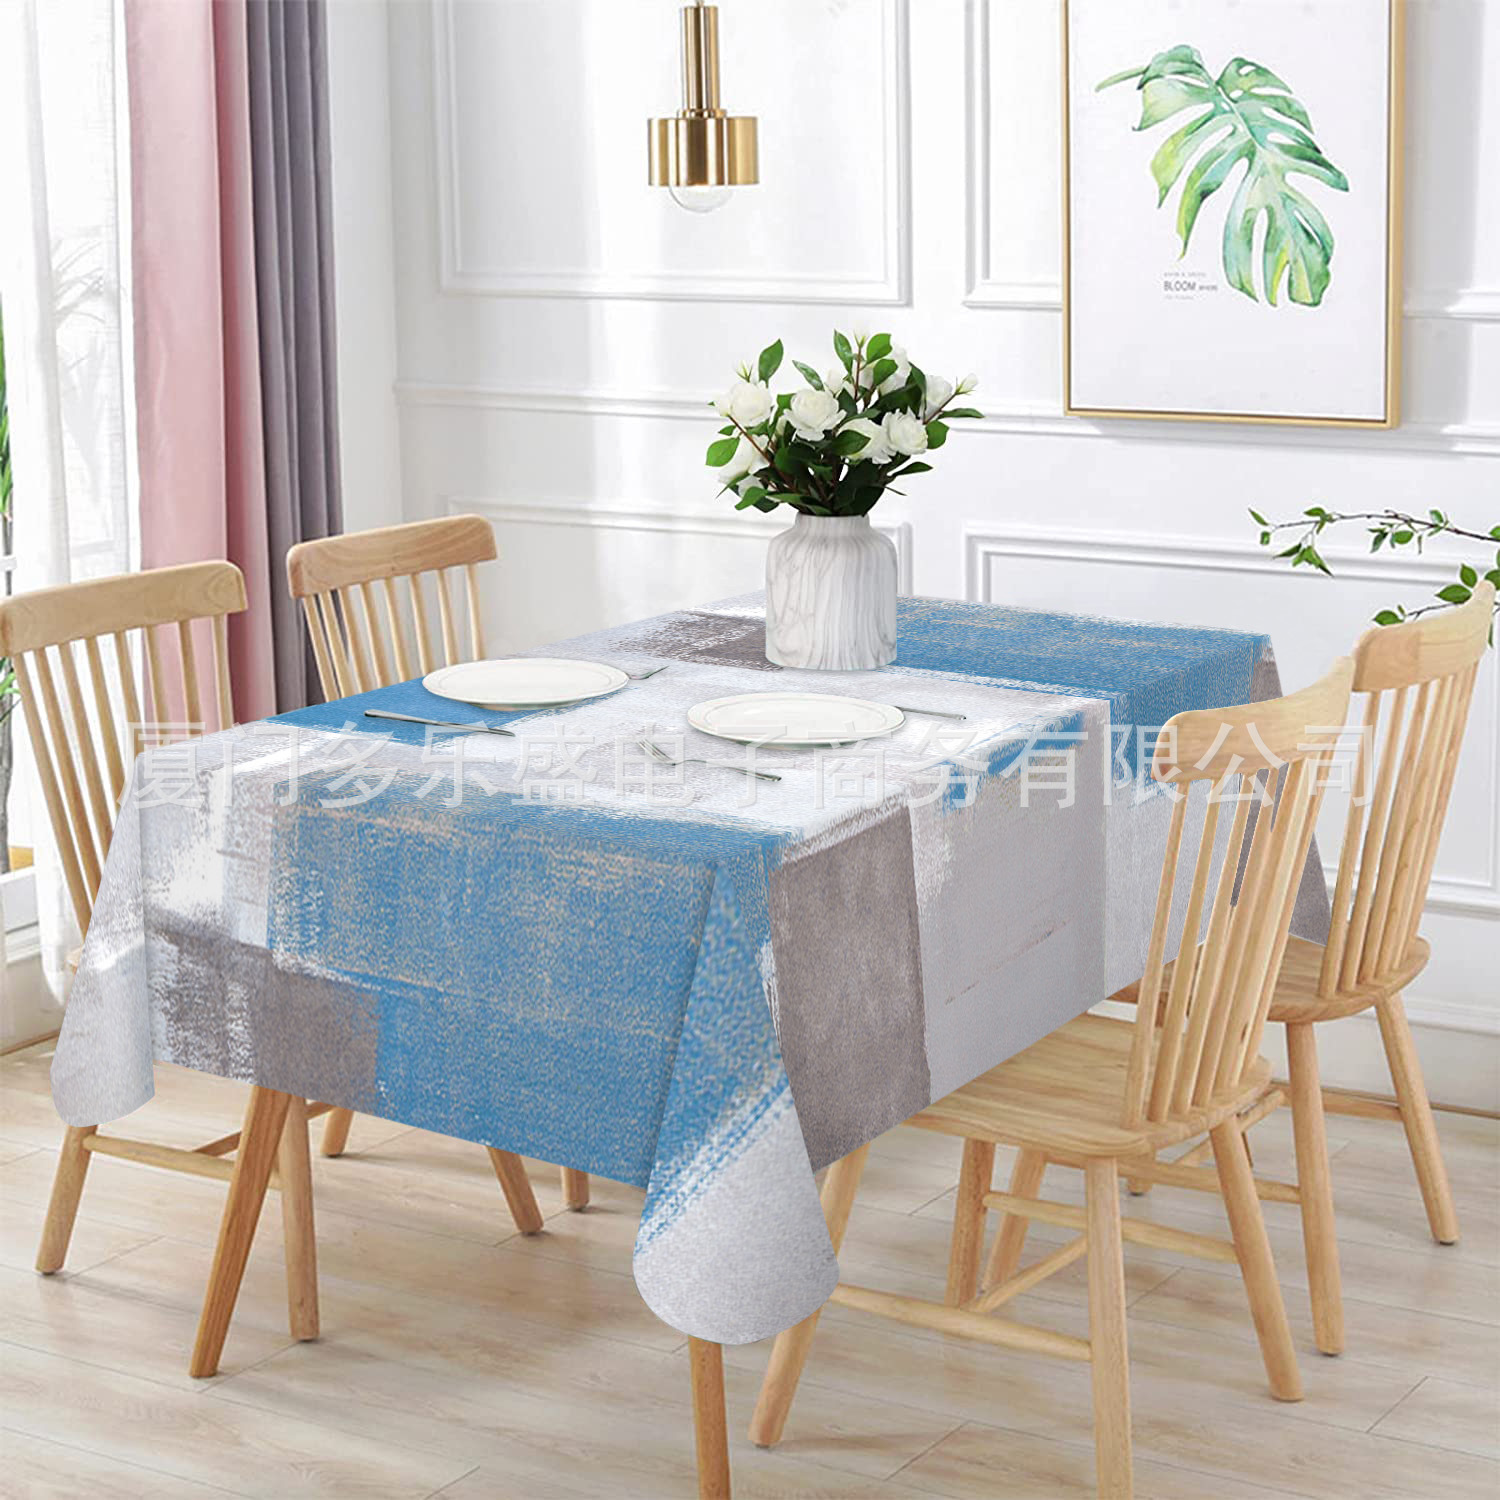 新品热销 北欧简约ins风餐桌布创意油画防水桌垫家居桌面装饰盖布